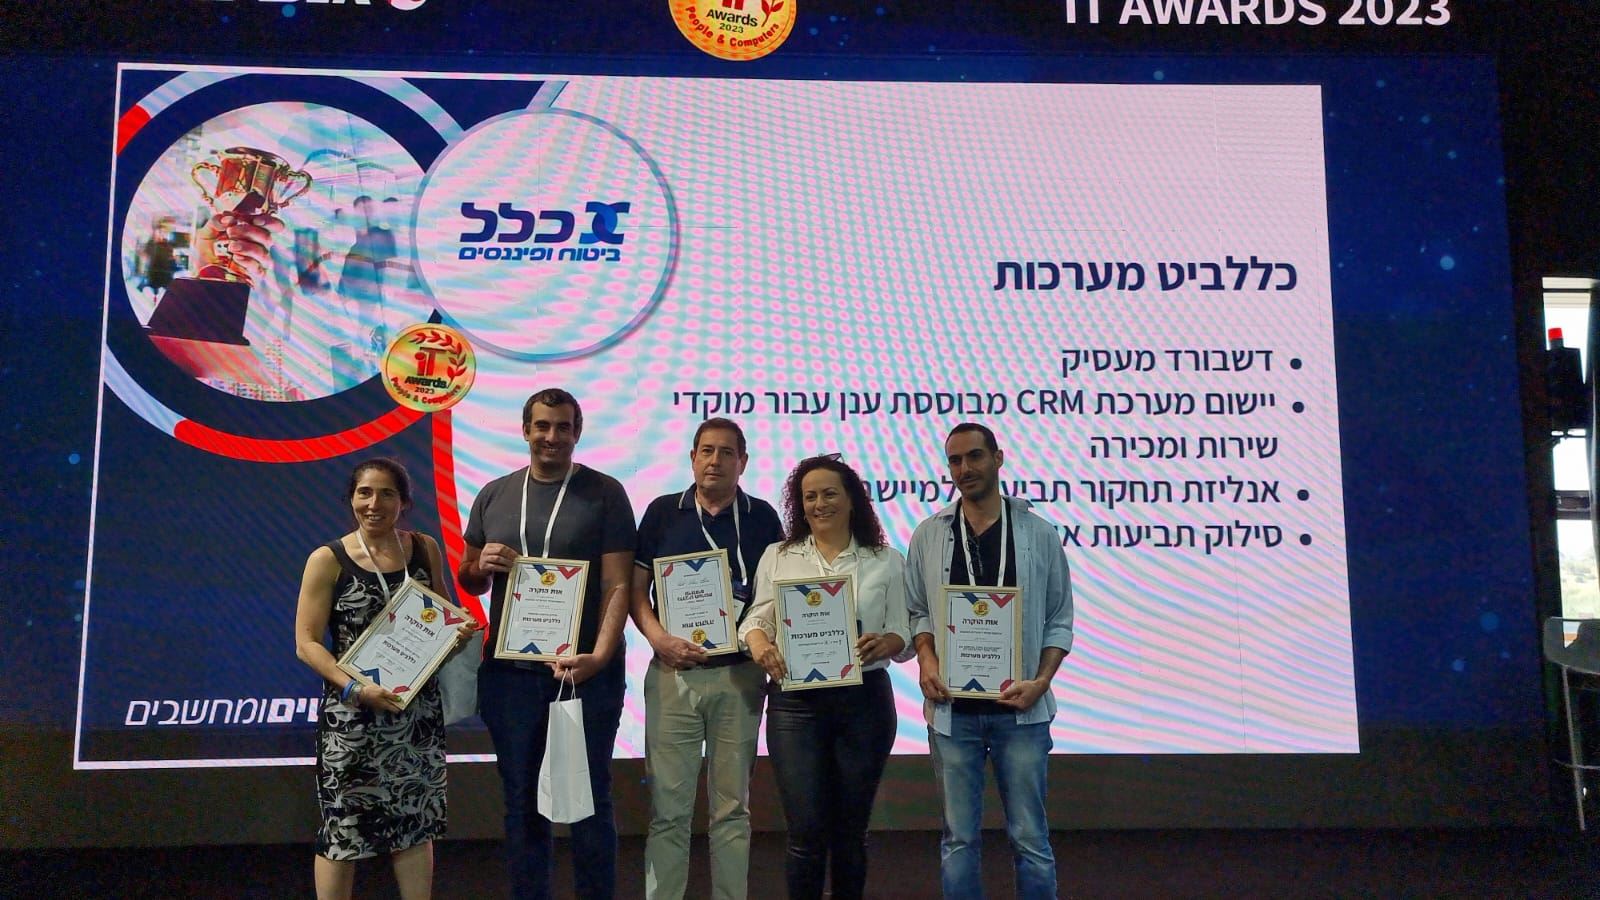 תחרות מצטייני המחשוב IT Award2023: כלל ביטוח זכתה במקום הראשון עם 4 פרויקטים בתחום ה-IT